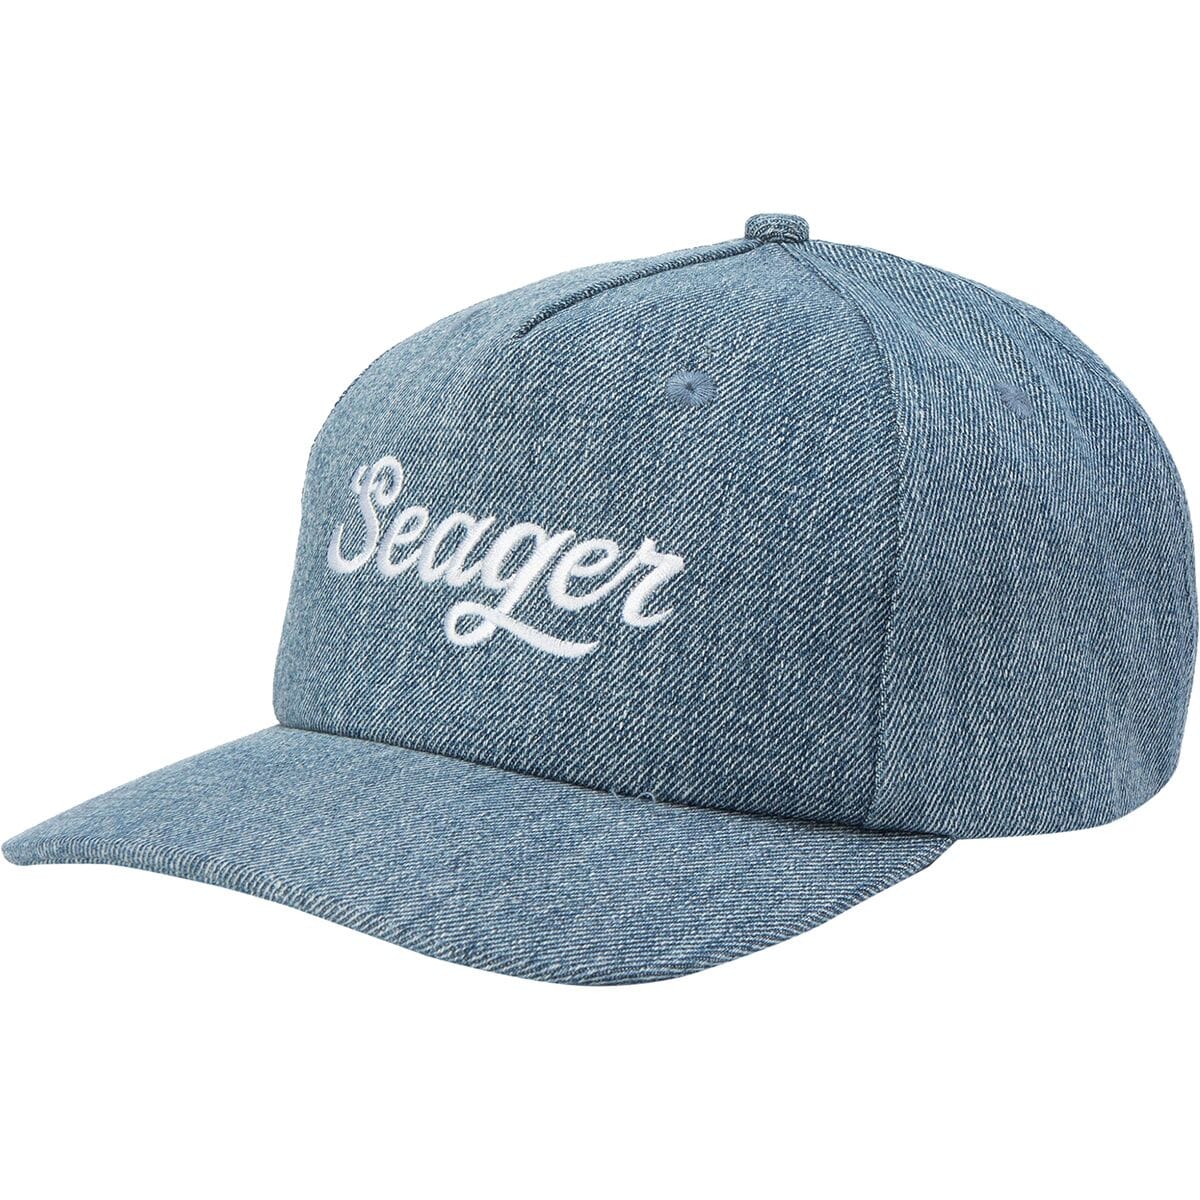 Большая джинсовая шляпа snapback Seager Co., индиго